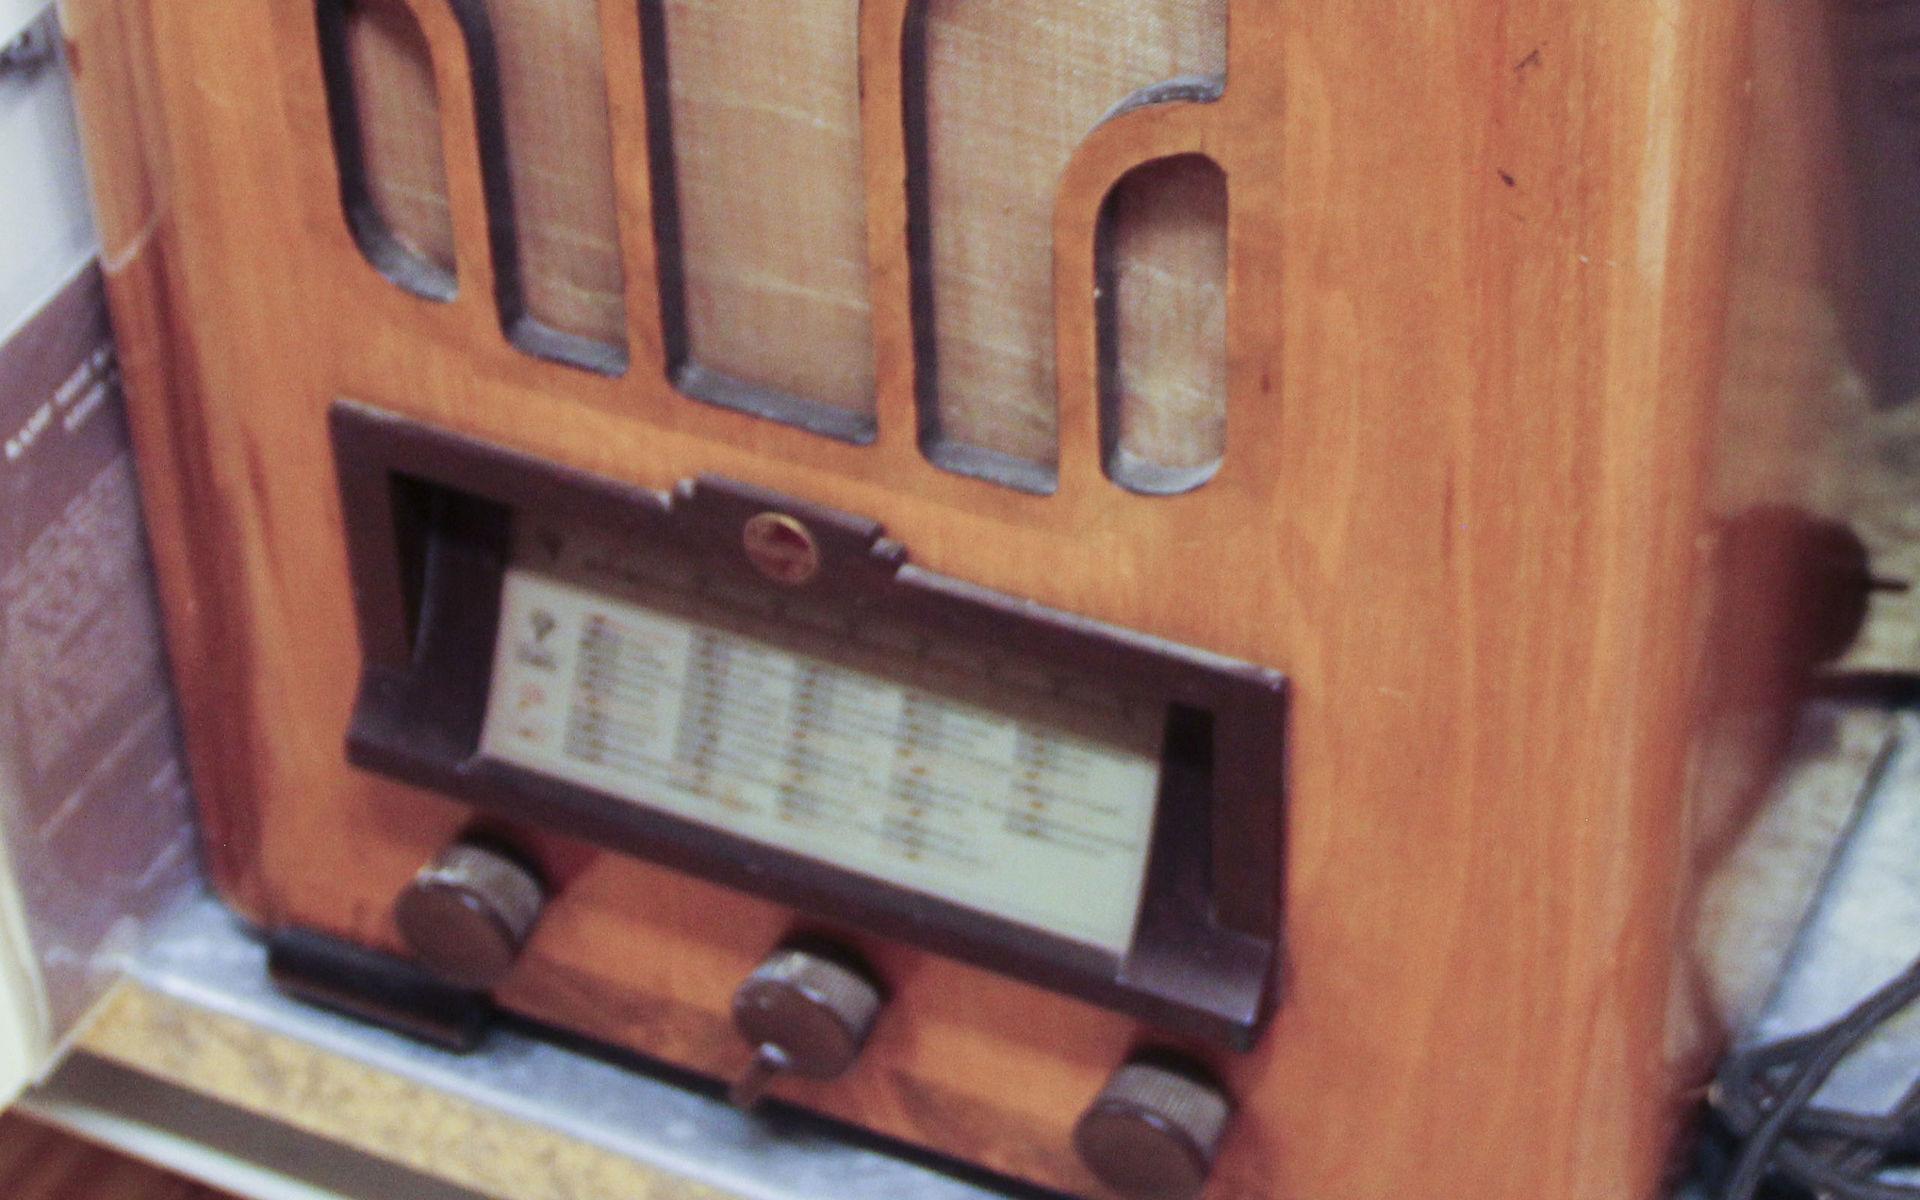 Barres levererade den här fina radion av fabrikatet Philips. Gåvan kom till museet 1966 – fortfarande lika stilfylld.